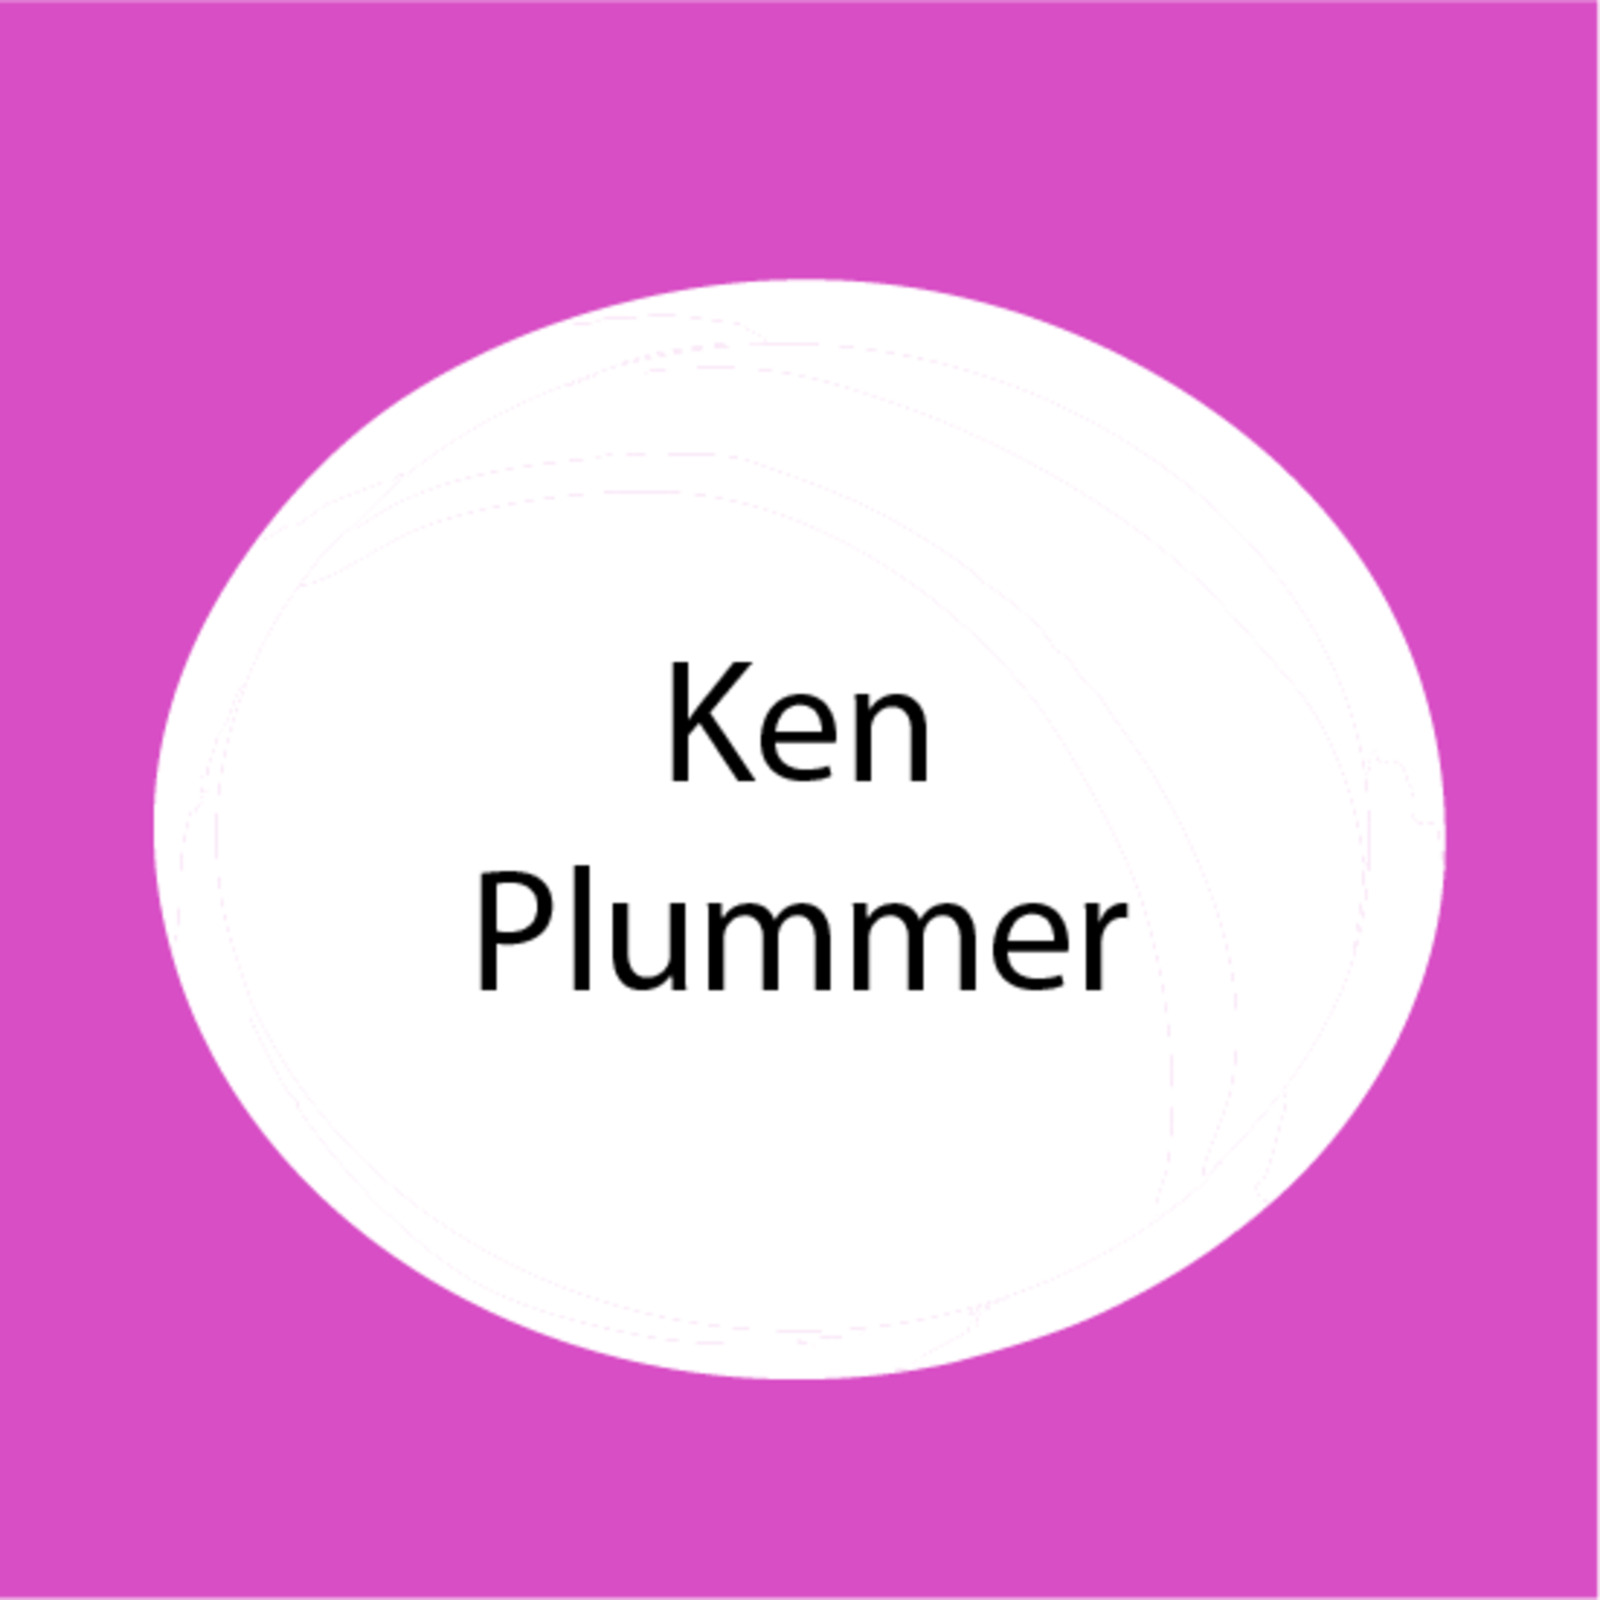 Ken Plummer